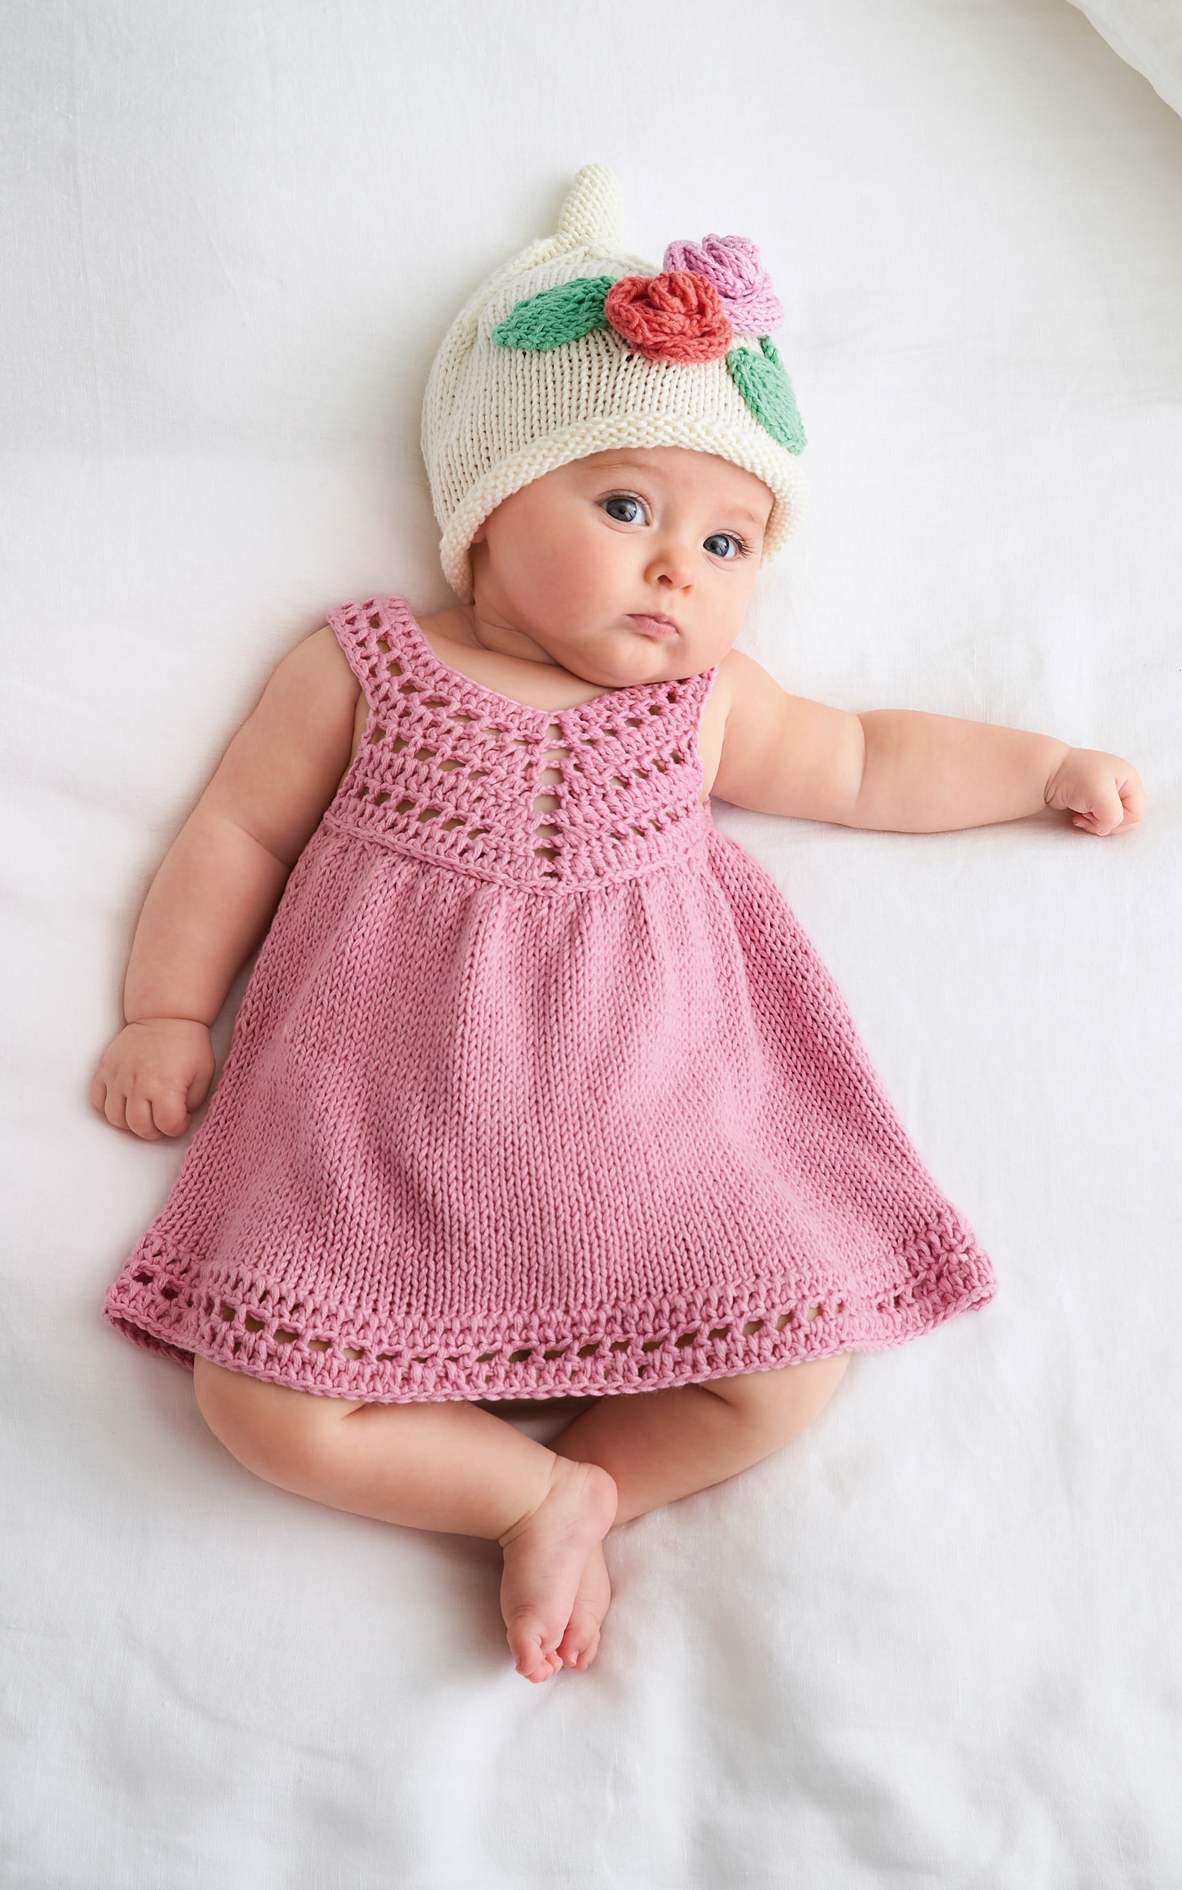 Baby Trägerkleidchen - Strickset von LANA GROSSA jetzt online kaufen bei OONIQUE